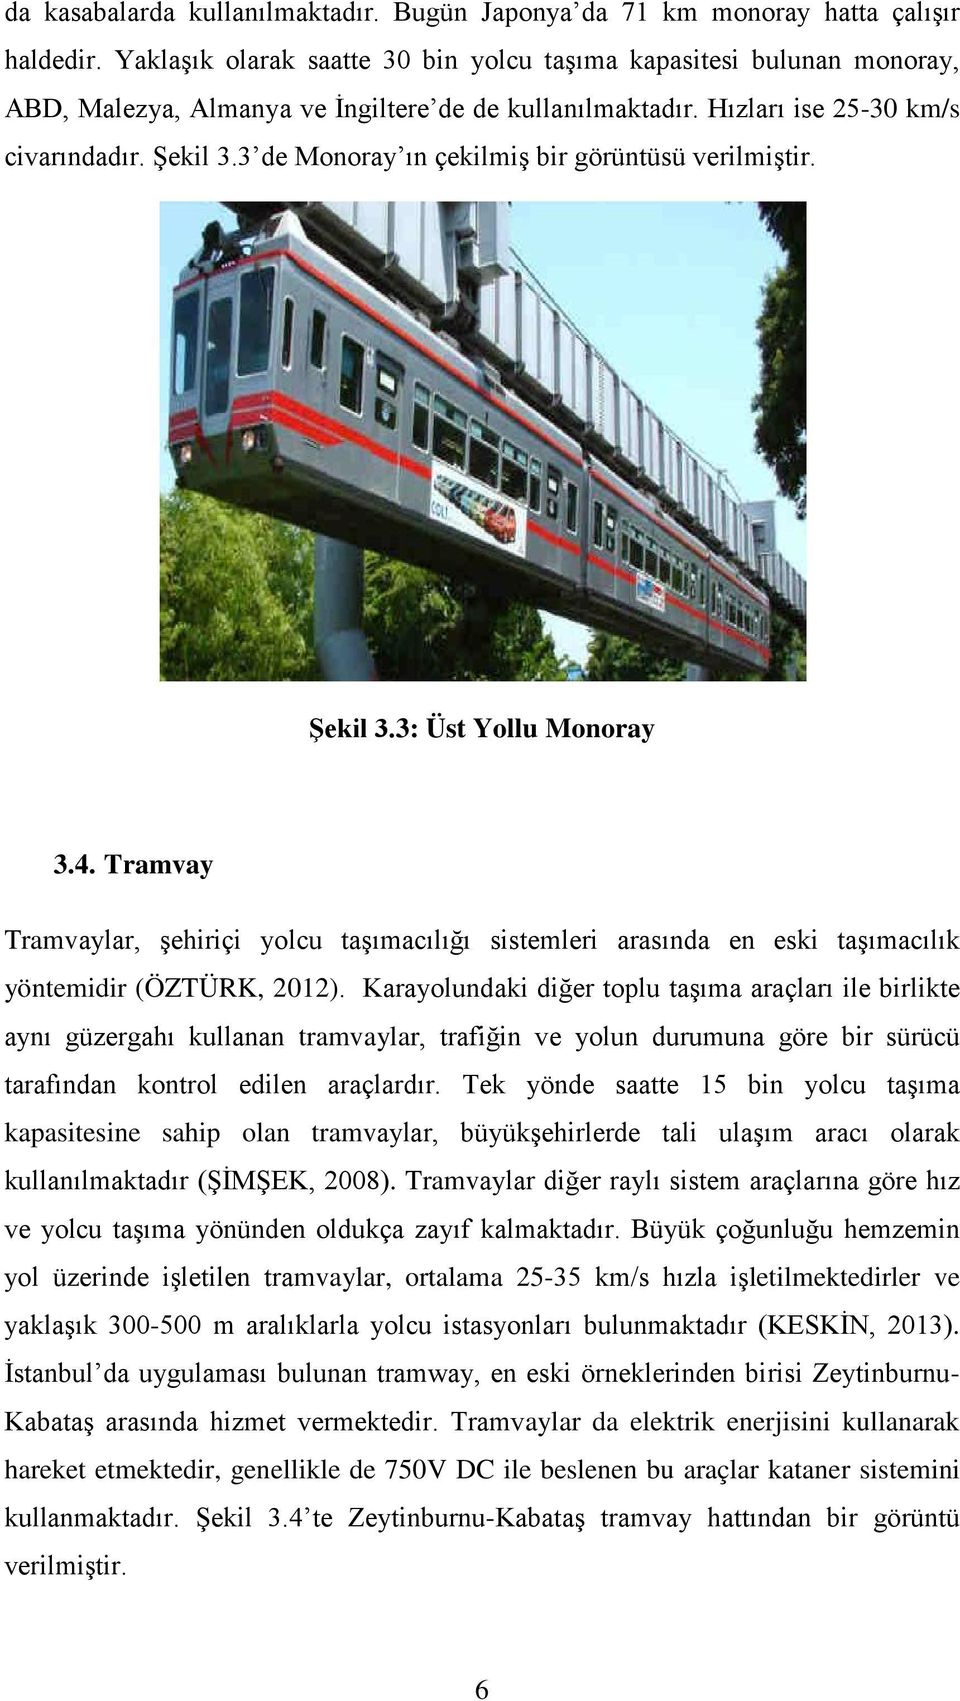 3 de Monoray ın çekilmiş bir görüntüsü verilmiştir. Şekil 3.3: Üst Yollu Monoray 3.4. Tramvay Tramvaylar, şehiriçi yolcu taşımacılığı sistemleri arasında en eski taşımacılık yöntemidir (ÖZTÜRK, 2012).